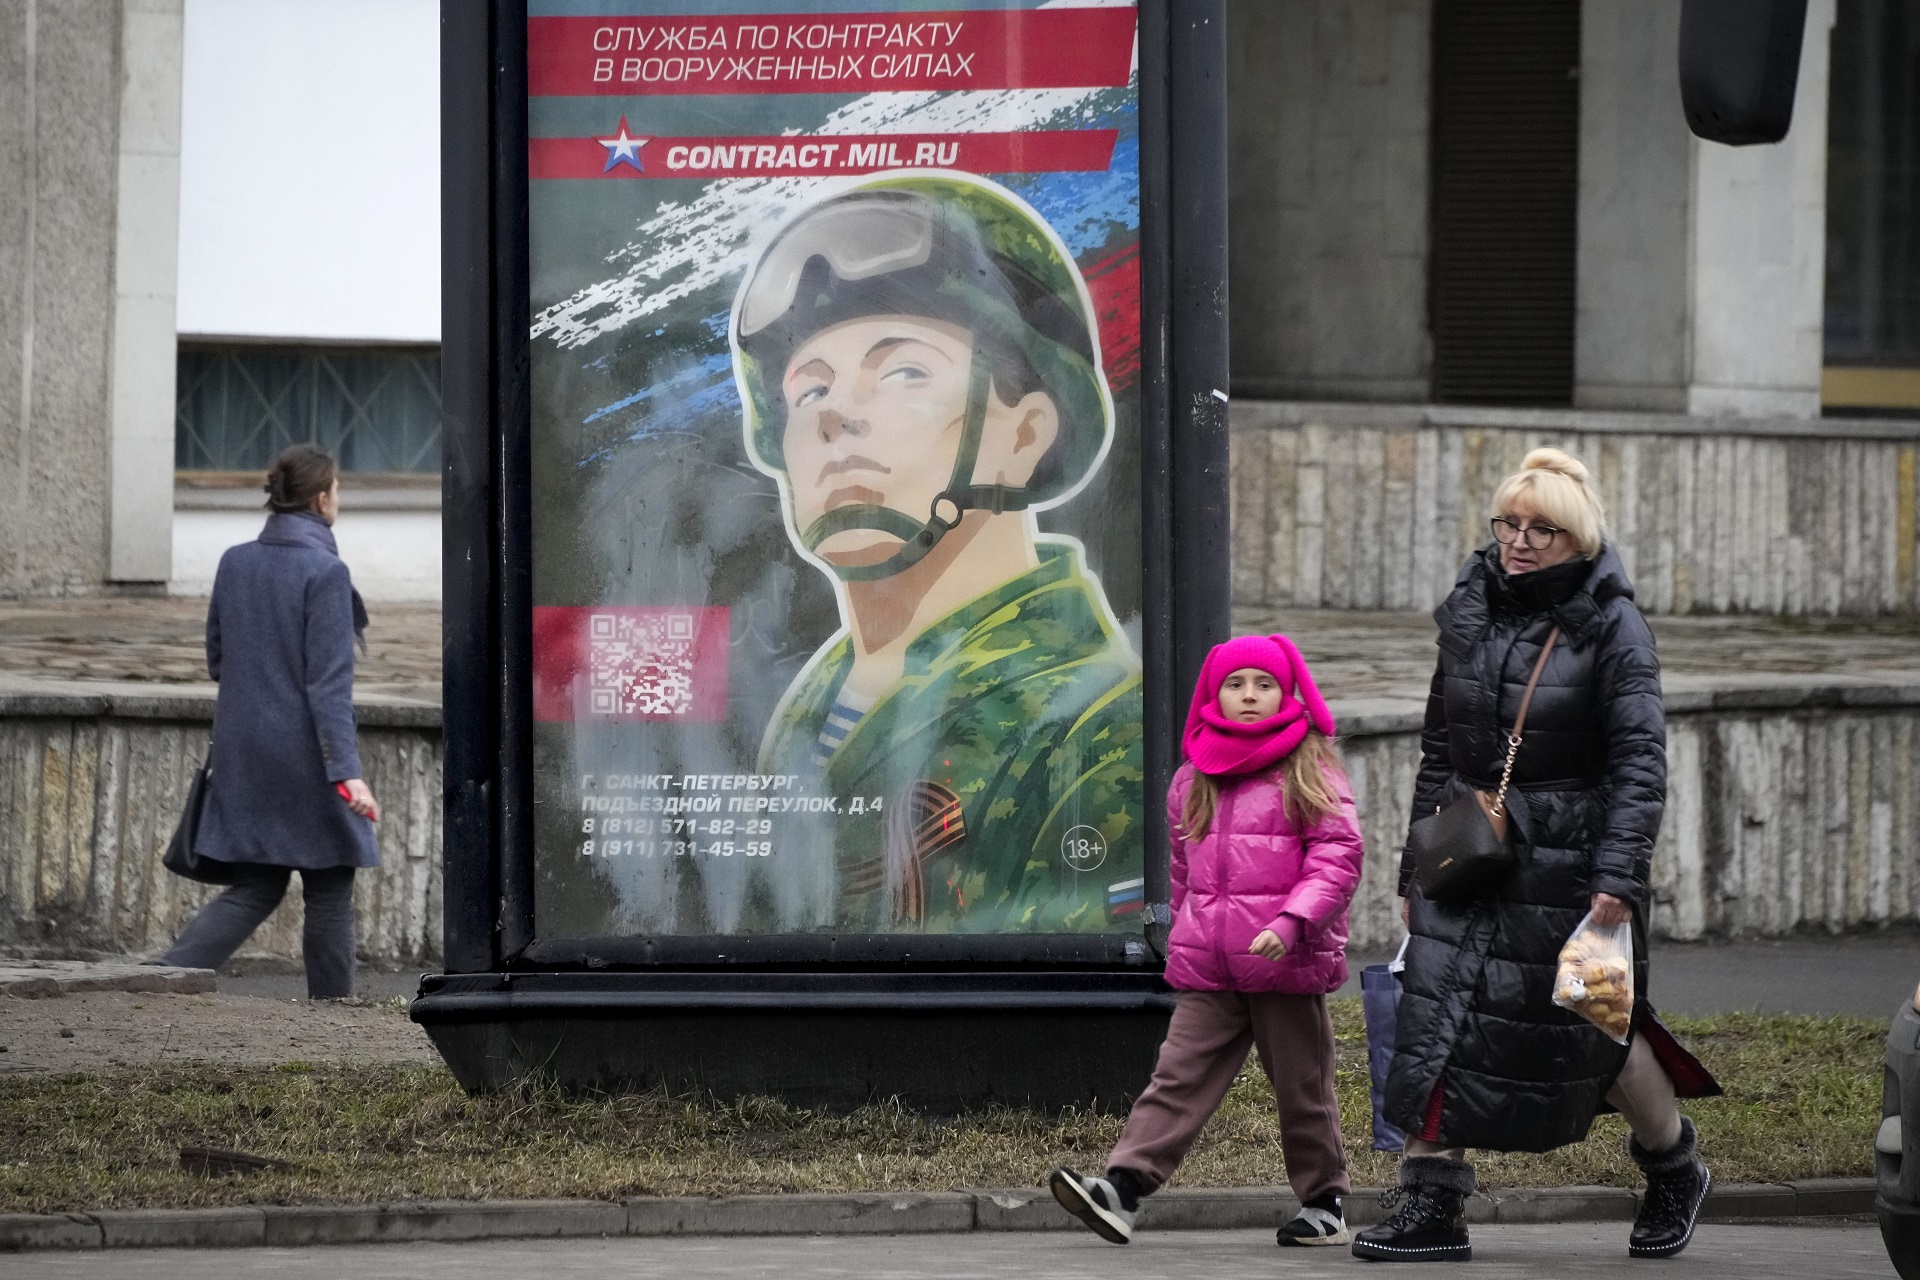 Peatones junto a un cartel de campaña de reclutamiento en San Petersburgo (AP)